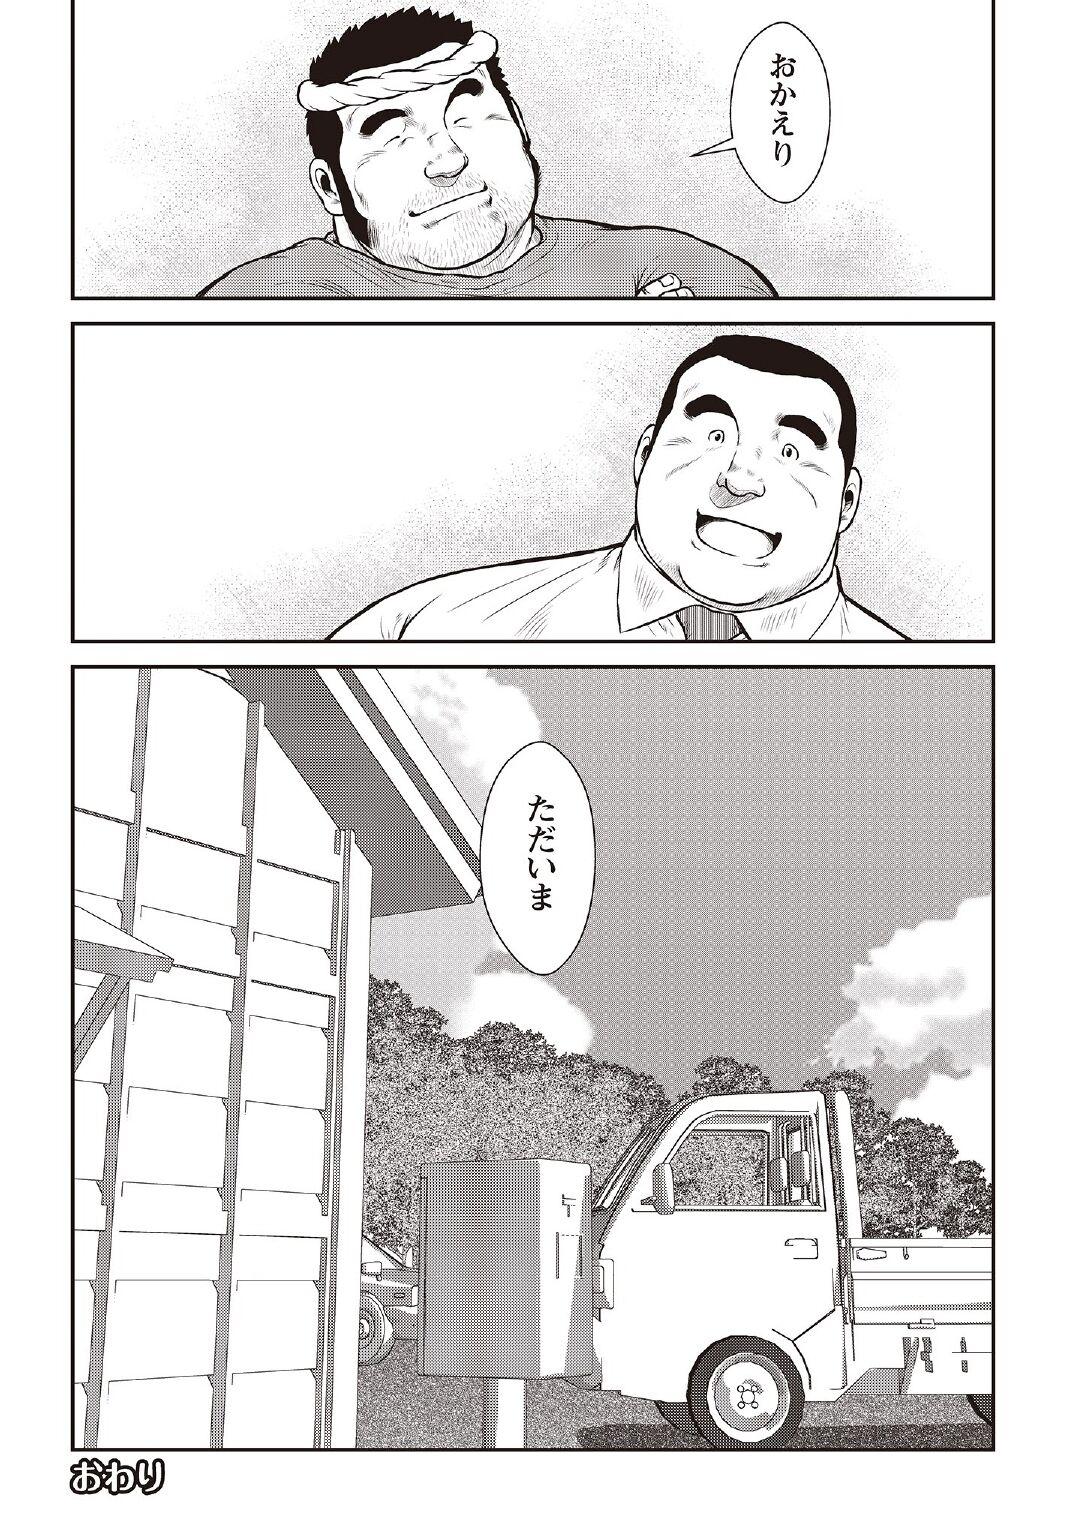 [Ebisubashi Seizou] Ebisubashi Seizou Tanpen Manga Shuu 2 Fuuun! Danshi Ryou [Bunsatsuban] PART 3 Bousou Hantou Taifuu Zensen Ch. 3 ~ Ch. 5 [Digital] 69